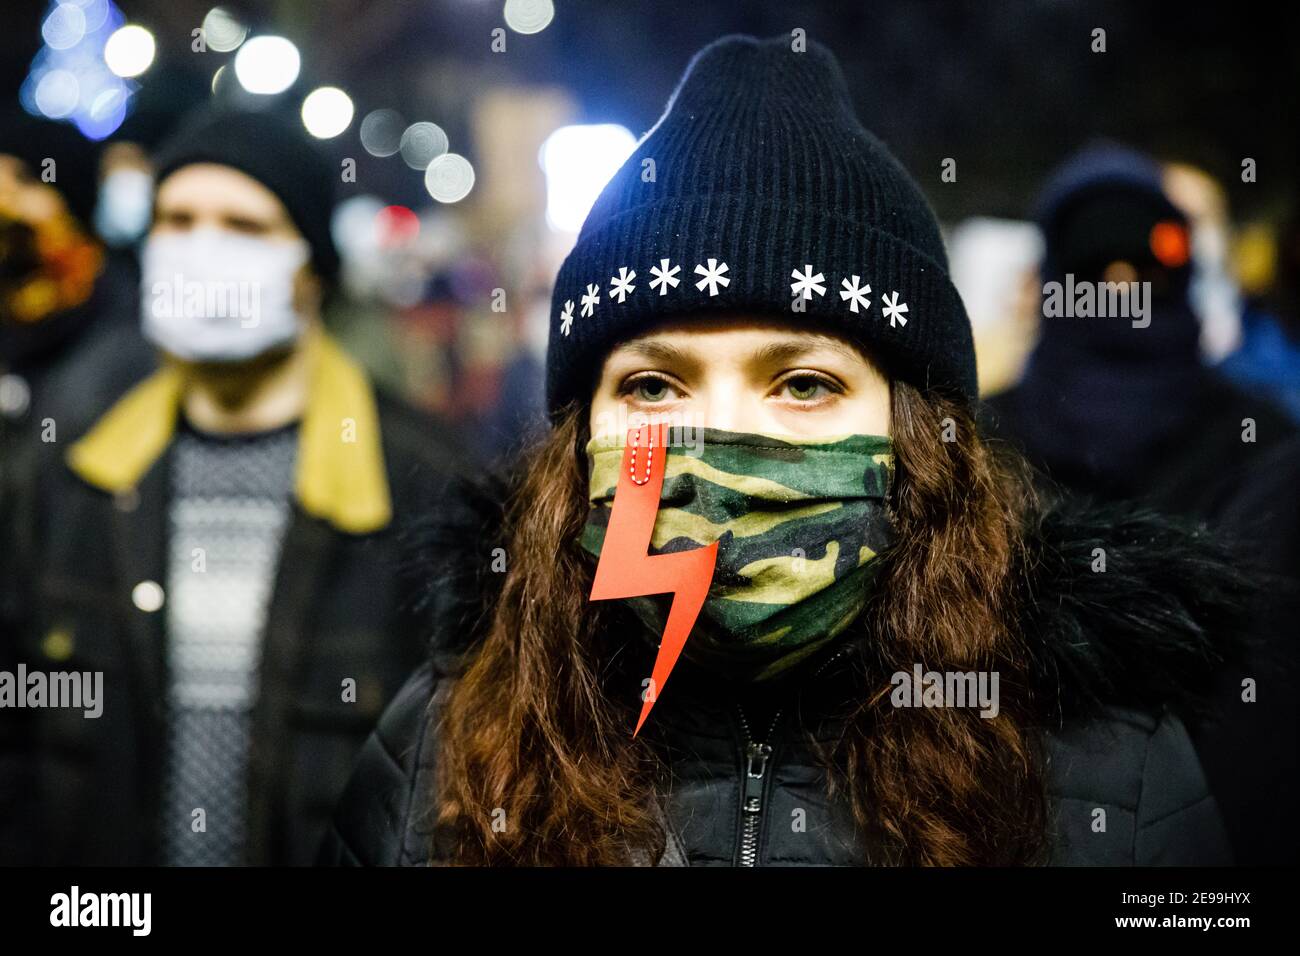 Ein Protestler in einer Militärmaske mit roter Beleuchtung (Symbol des Frauenstreiks) während der Demonstrationen.nach dem Urteil des polnischen Verfassungsgerichts, das am 27th. Januar in Kraft trat, um eines der restriktivsten Anti-Abtreibungsgesetze in Europa umzusetzen, gingen Hunderte von Polen in allen größeren Städten auf die Straße. Die Proteste wurden vom Frauenstreik organisiert. Stockfoto